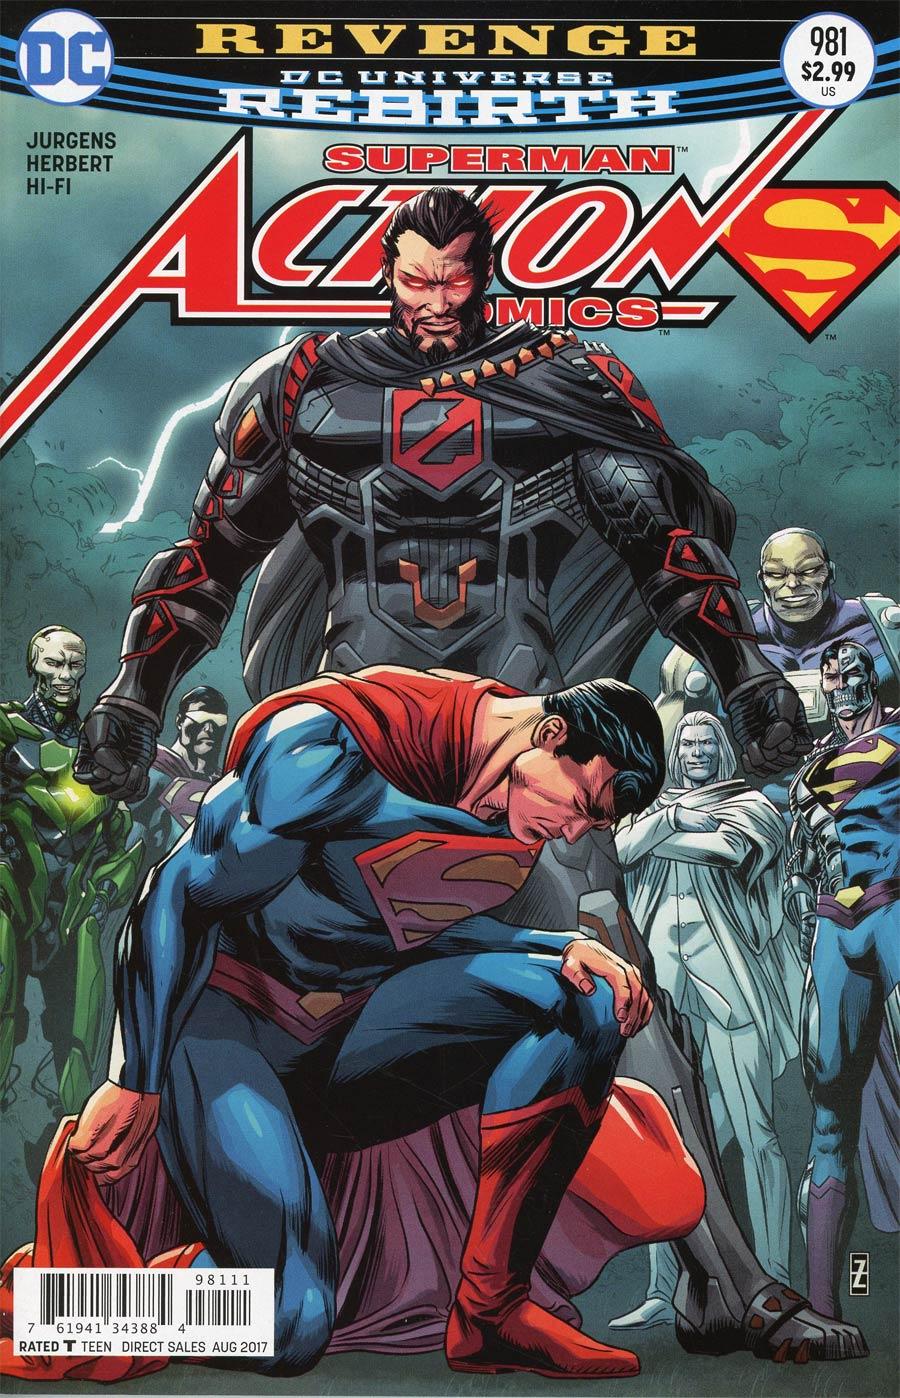 Action Comics Vol. 2 #981